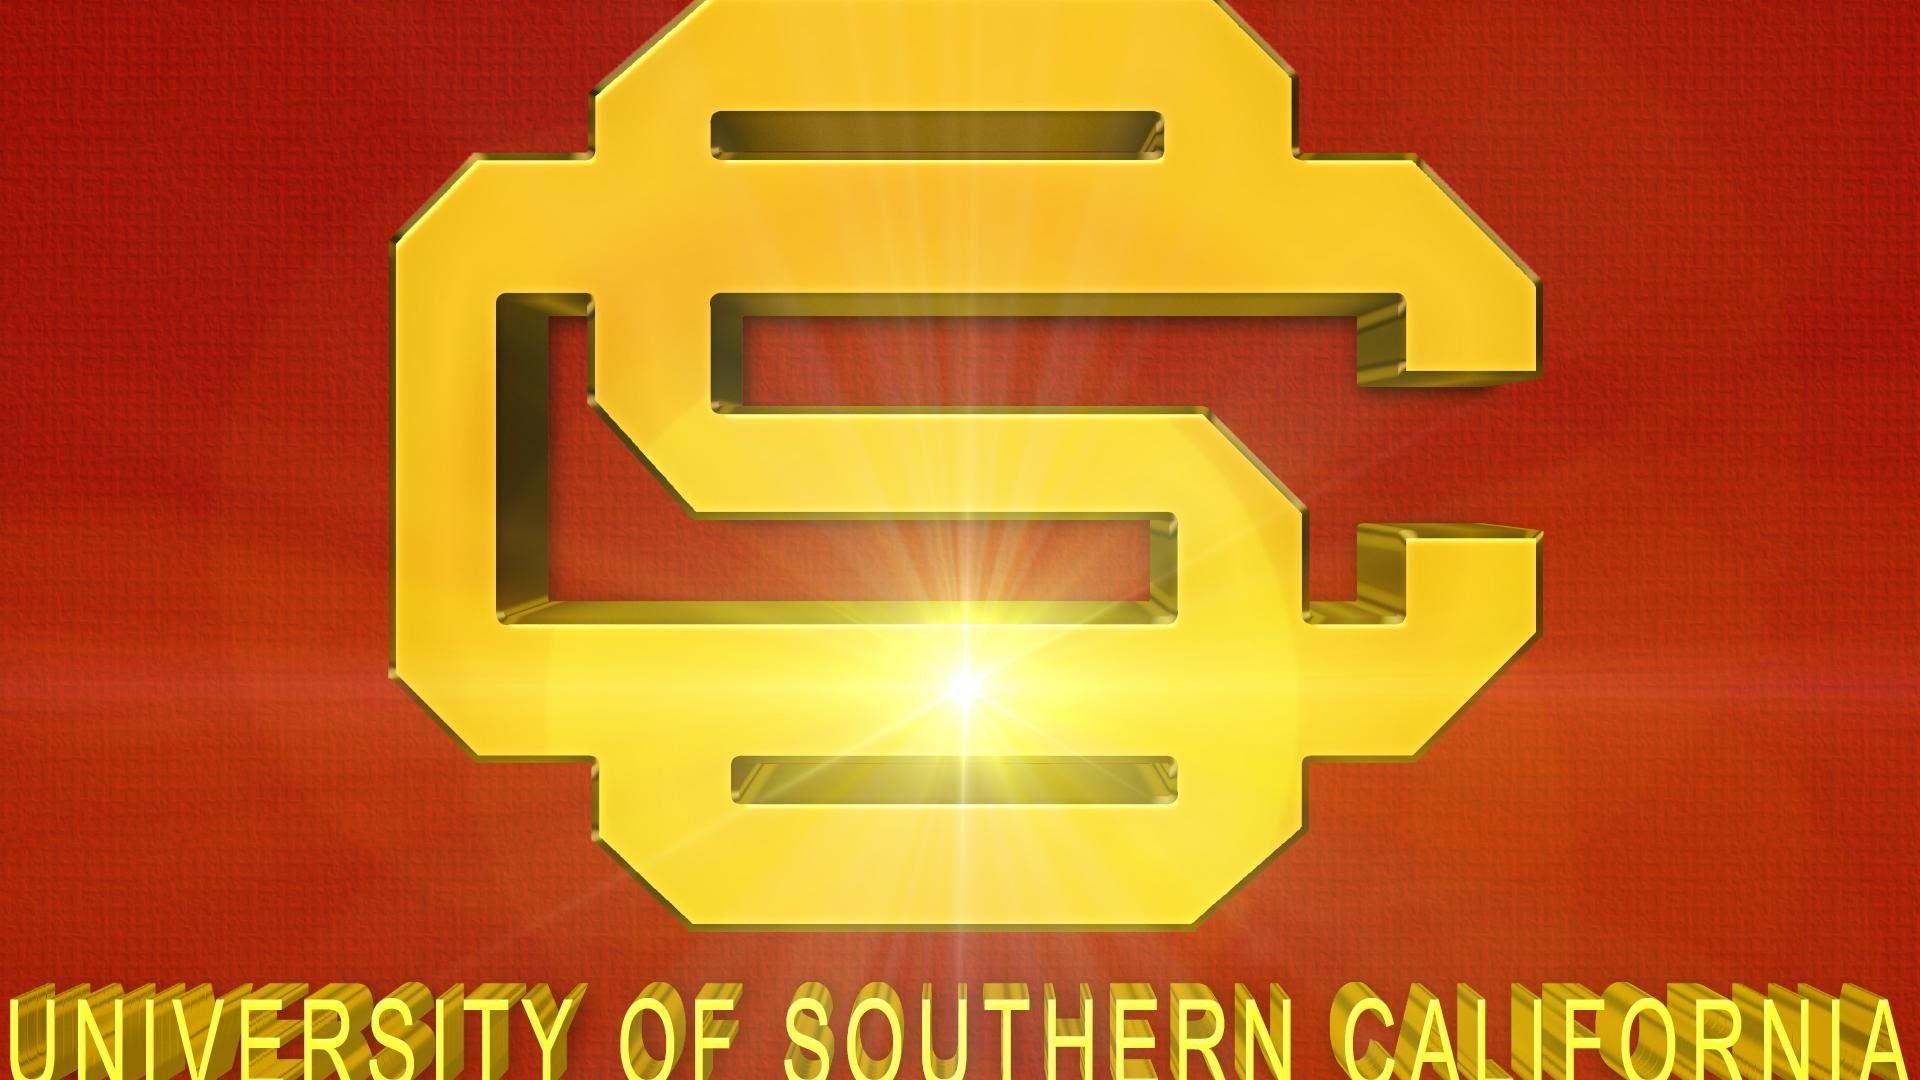 USC TROJANS college football wallpaper | 1920x1080 | 592777 ...